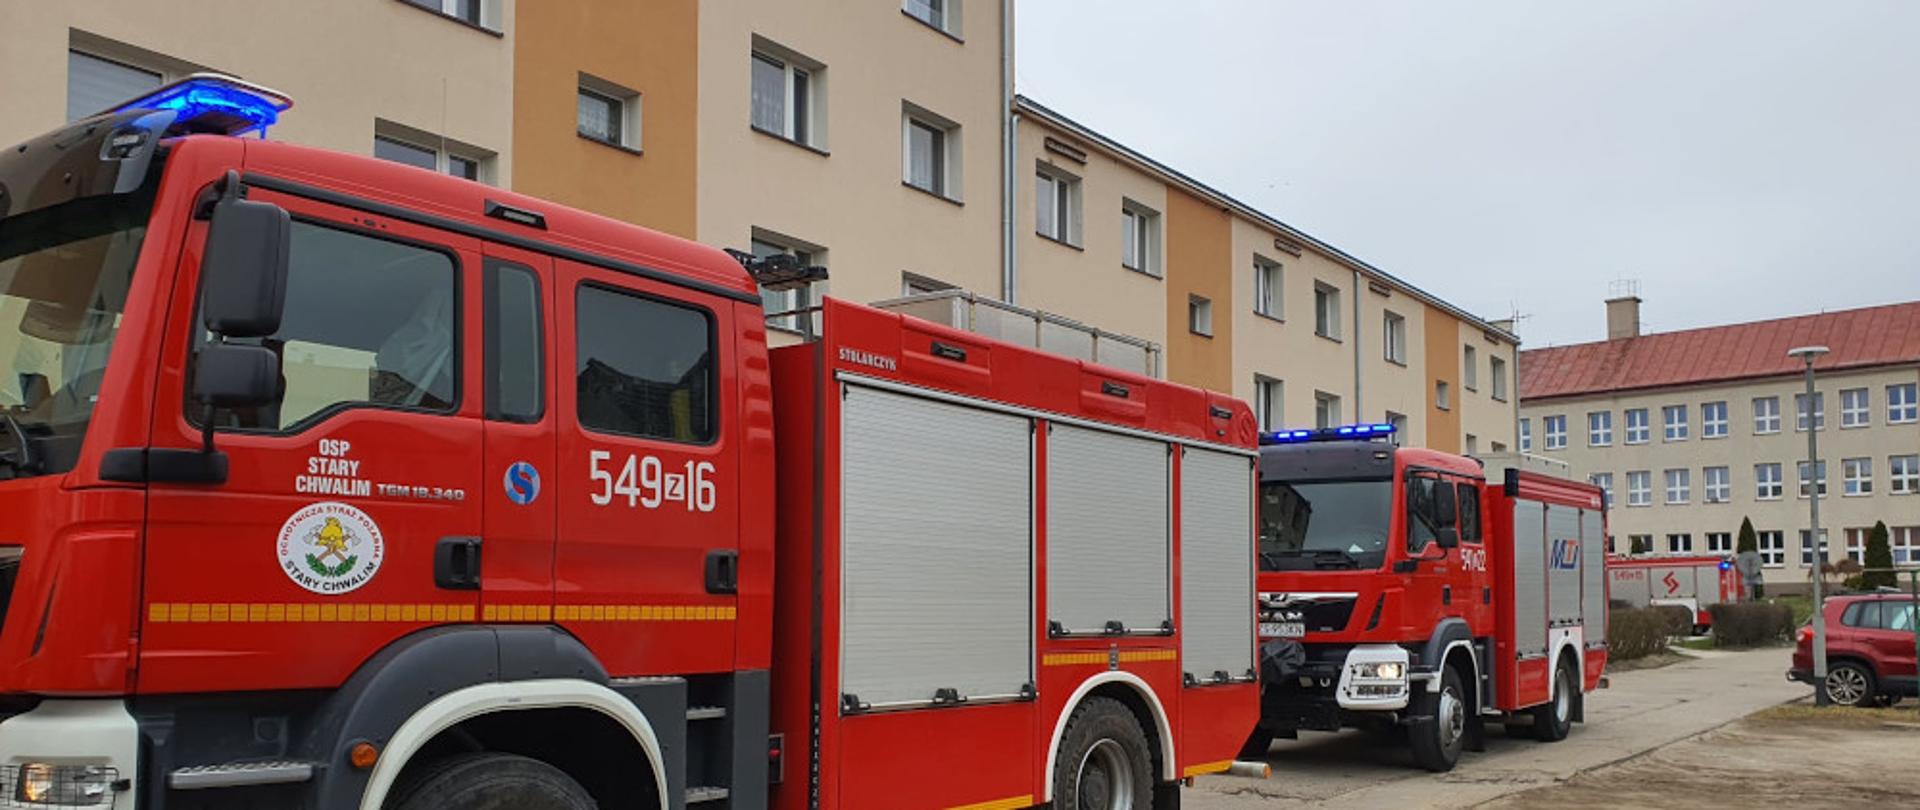 Pożar mieszkania w budynku wielorodzinnym w miejscowości Barwice - dwa samochody ratowniczo-gaśnicze, koloru czerwonego na tle bloku mieszkalnego